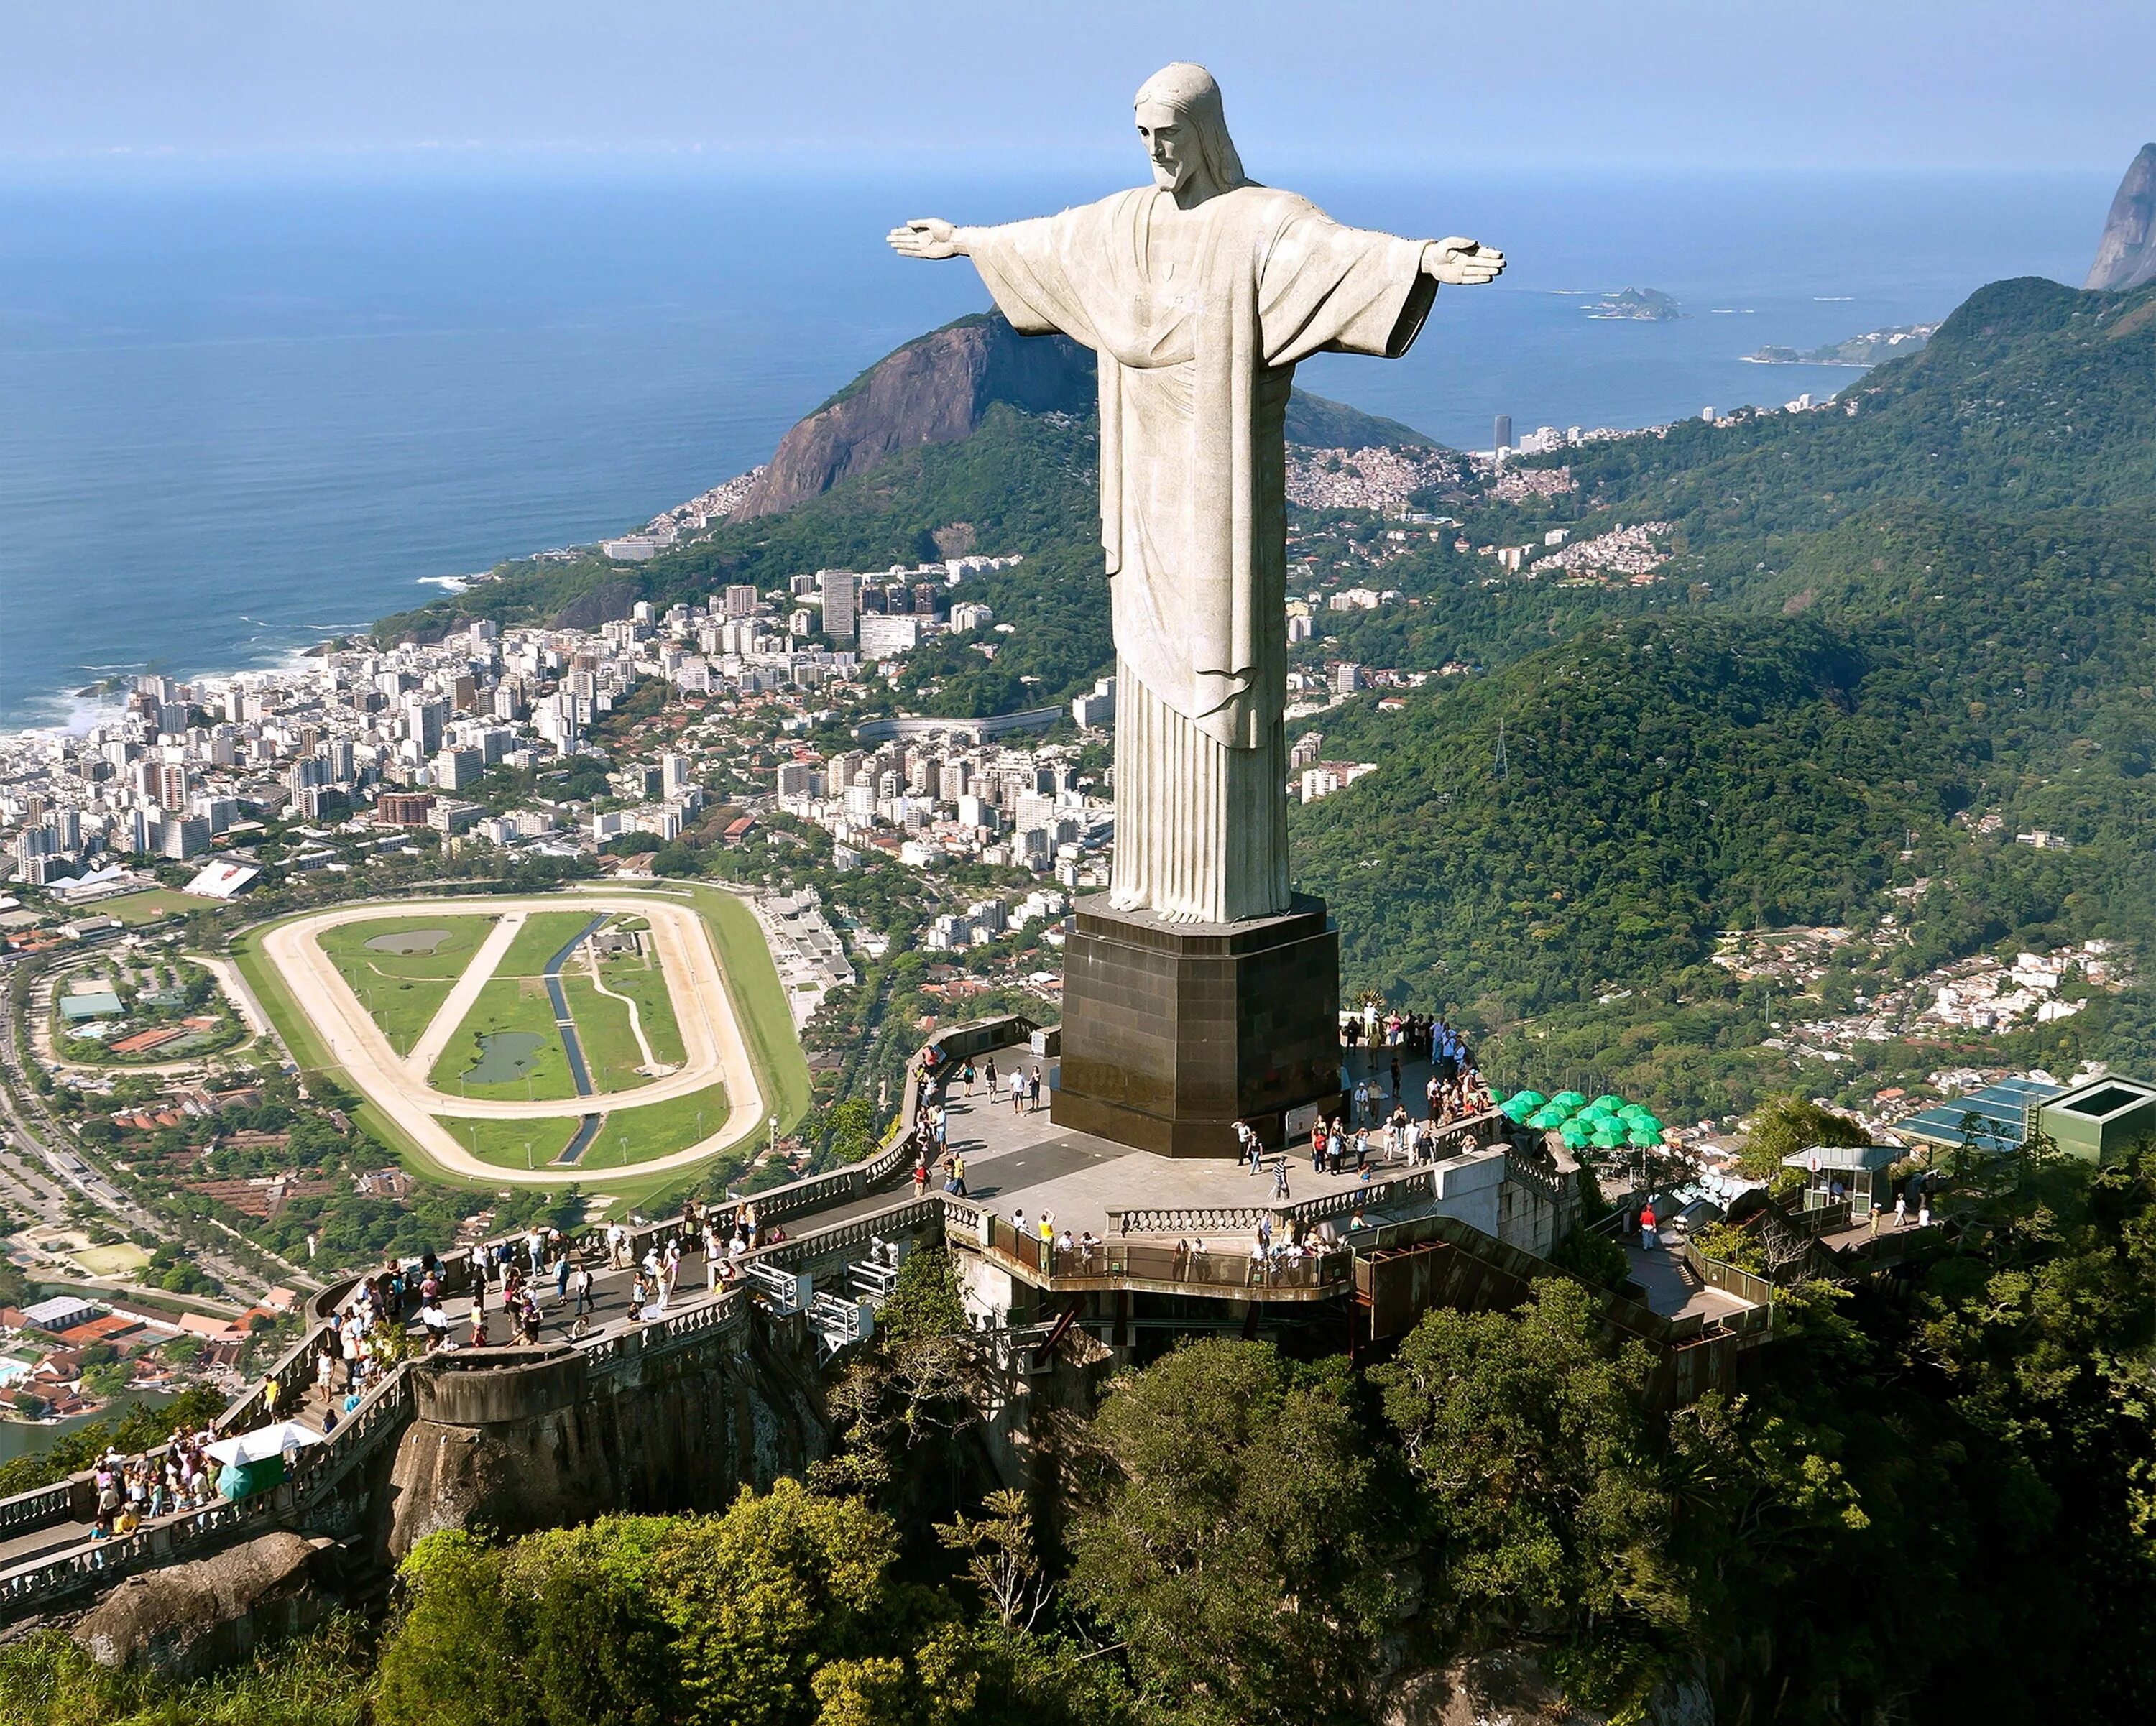 Статуя искупителя. Христос Искупитель Рио де Жанейро. Статуя Христа-Искупителя Бразилия. Статуя в Рио-де-Жанейро. Христос-Искупитель Рио-де-Жанейро, Бразилия.